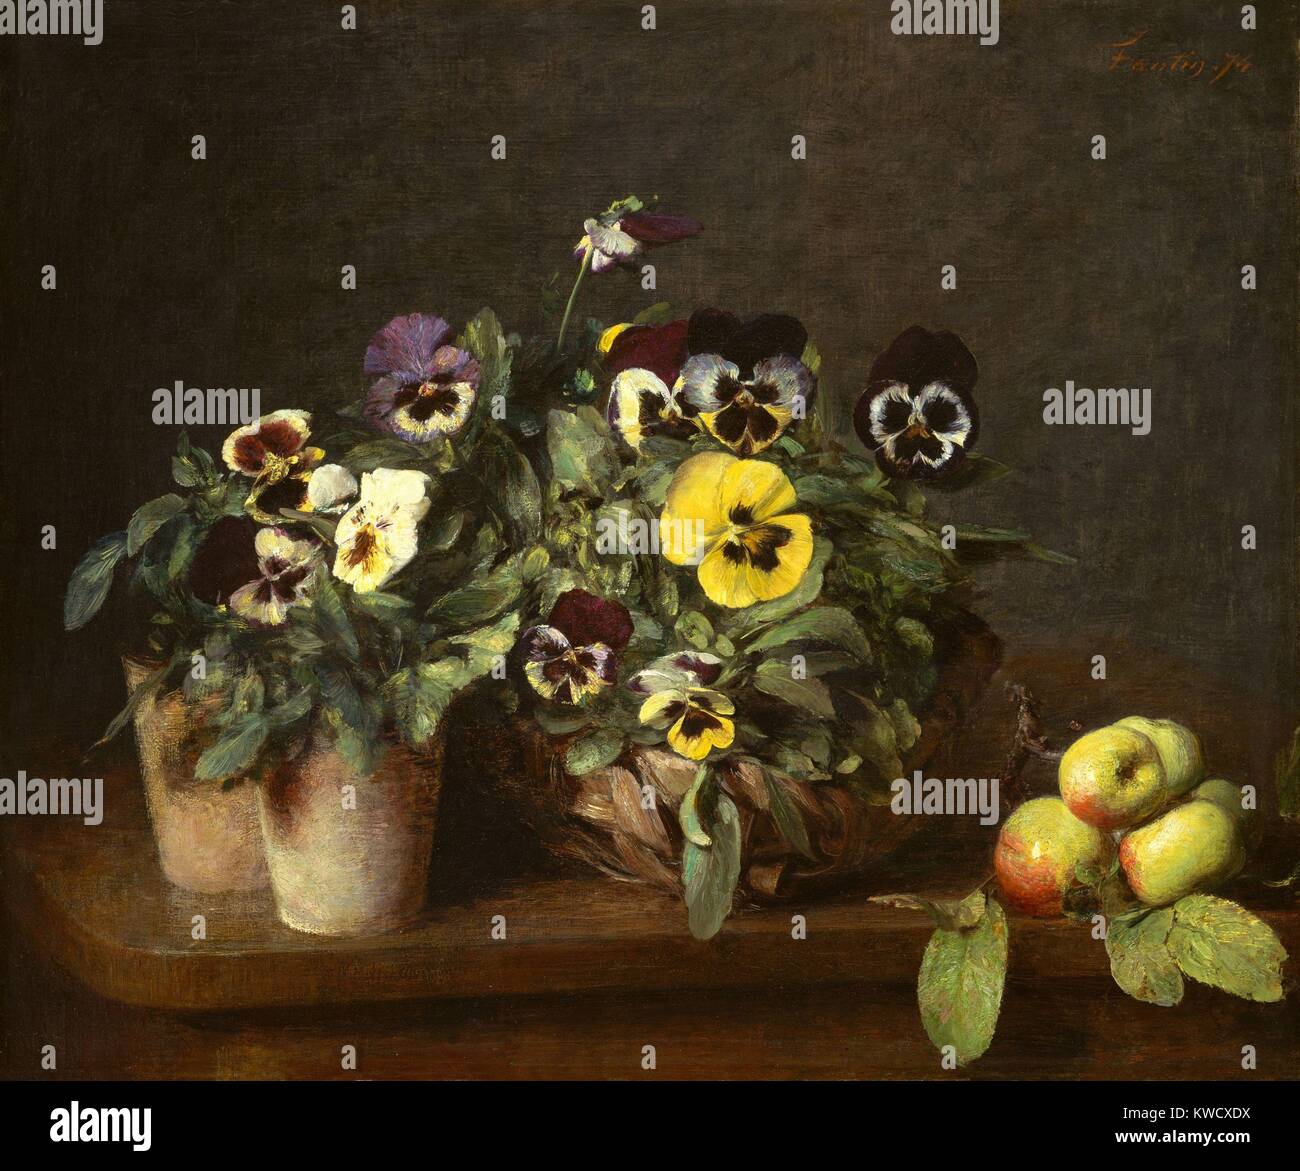 Stillleben mit Stiefmütterchen, von Henri Fantin-Latour, 1874, französischer impressionistischer Malerei, Öl auf Leinwand. Dies ist einer von 32 Gemälden, die Fantin-Latour, 1874 (BSLOC 2017 3 150) Stockfoto